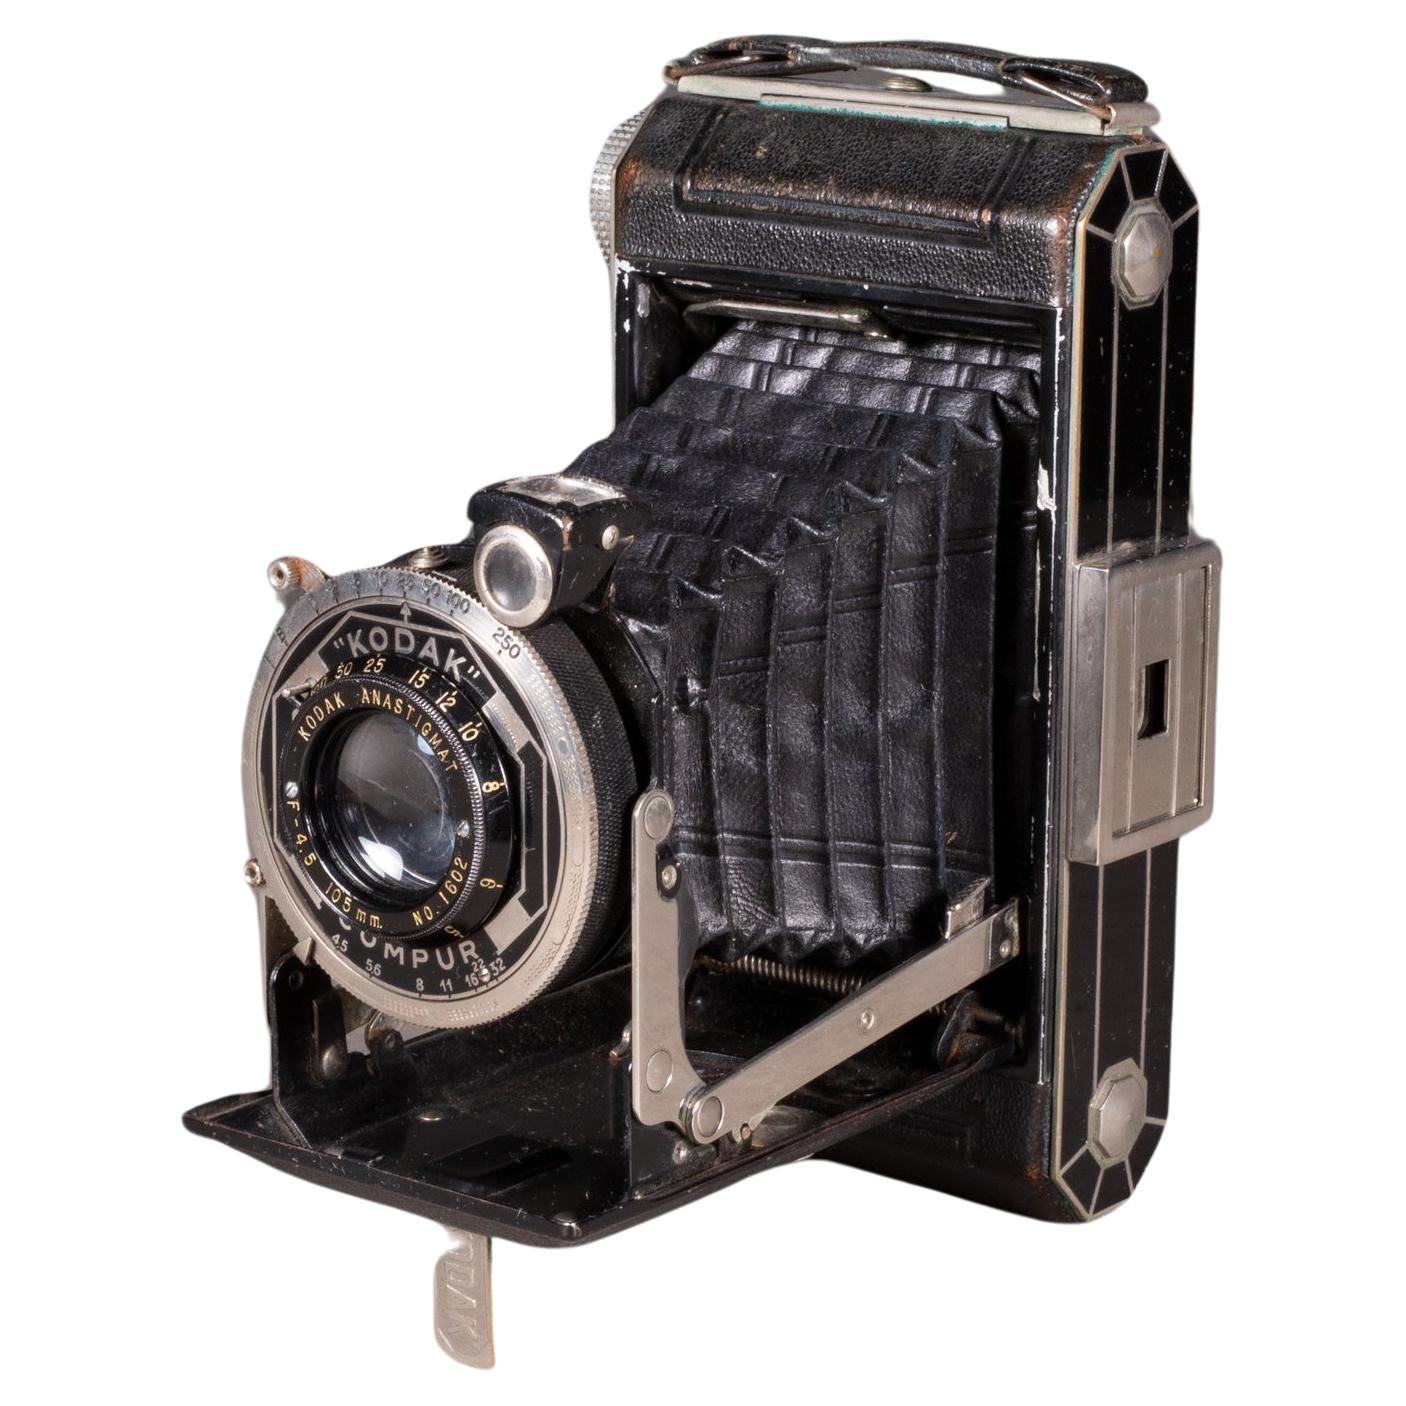 Kodak Compur modèle six-20 d'appareil photo pliante Art déco, vers 1930